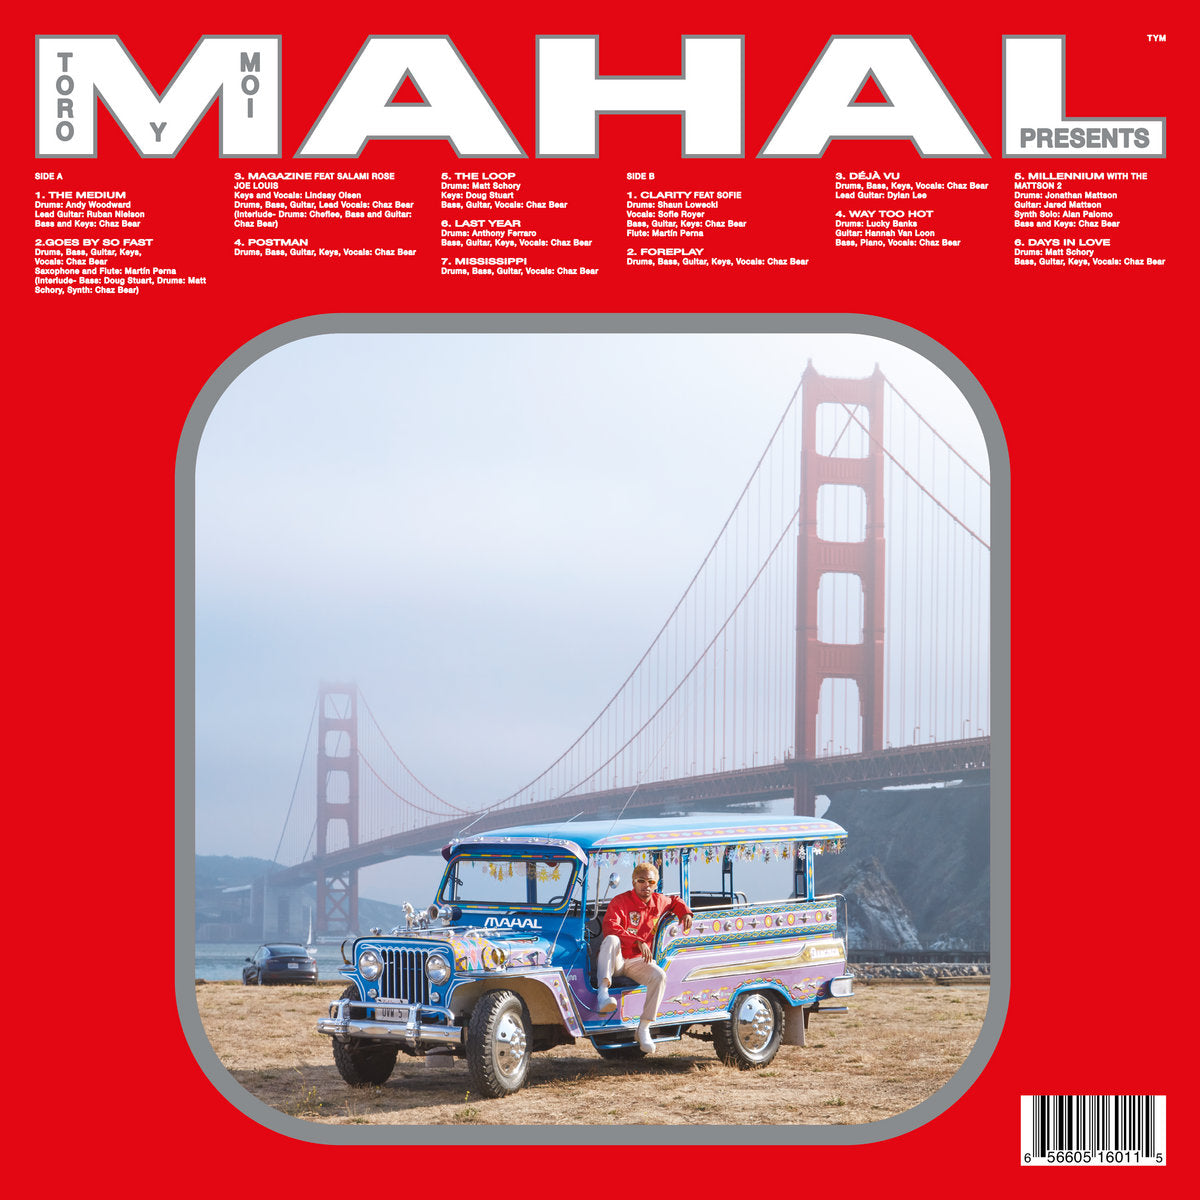 MAHAL (New LP)